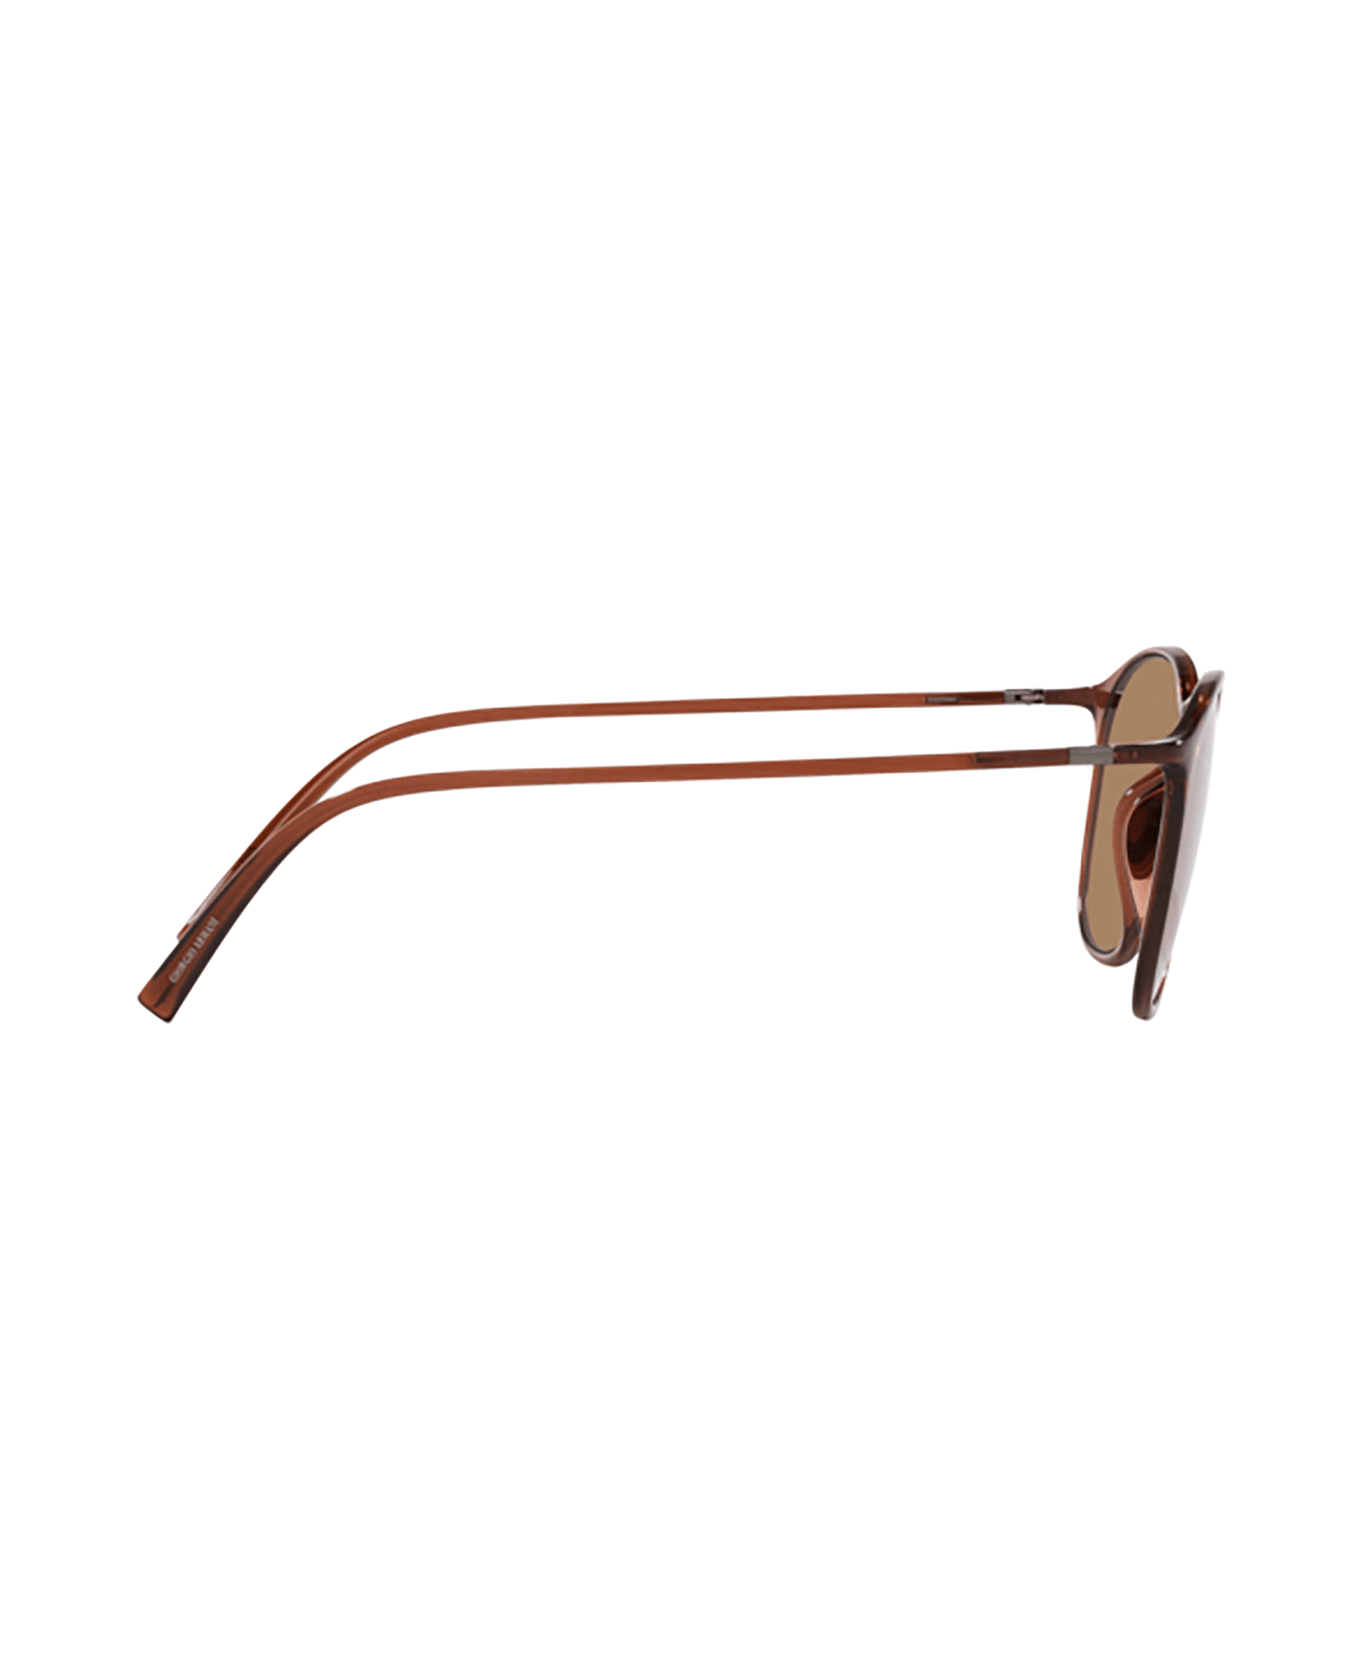 Giorgio Armani Ar8186u Transparent Brown Sunglasses - Transparent brown